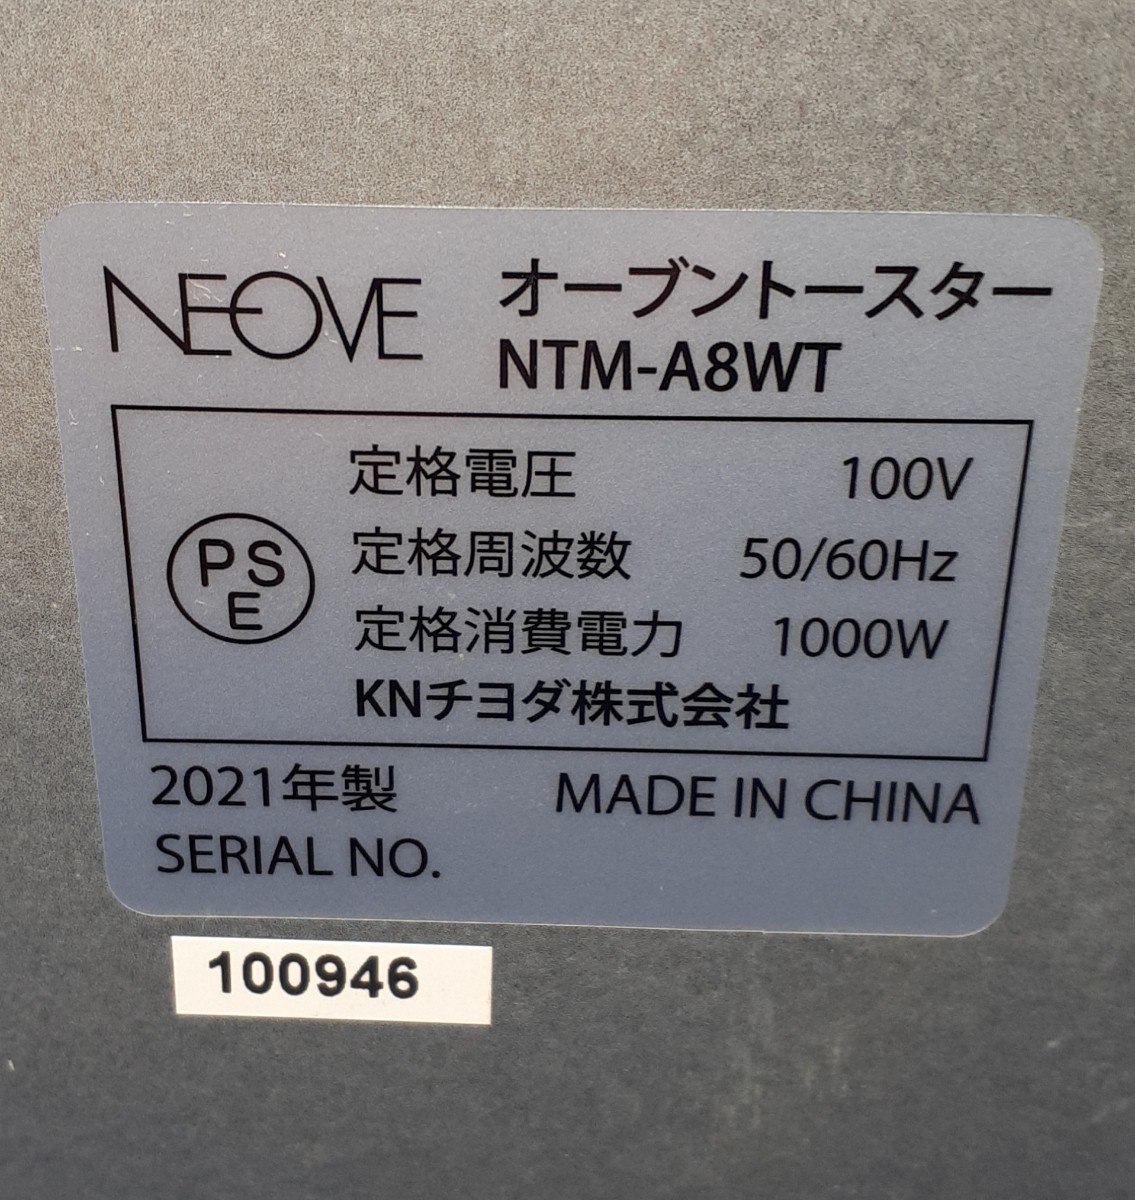 代購代標第一品牌－樂淘letao－No.212 NEOVE オーブントースターNTM-A8WT